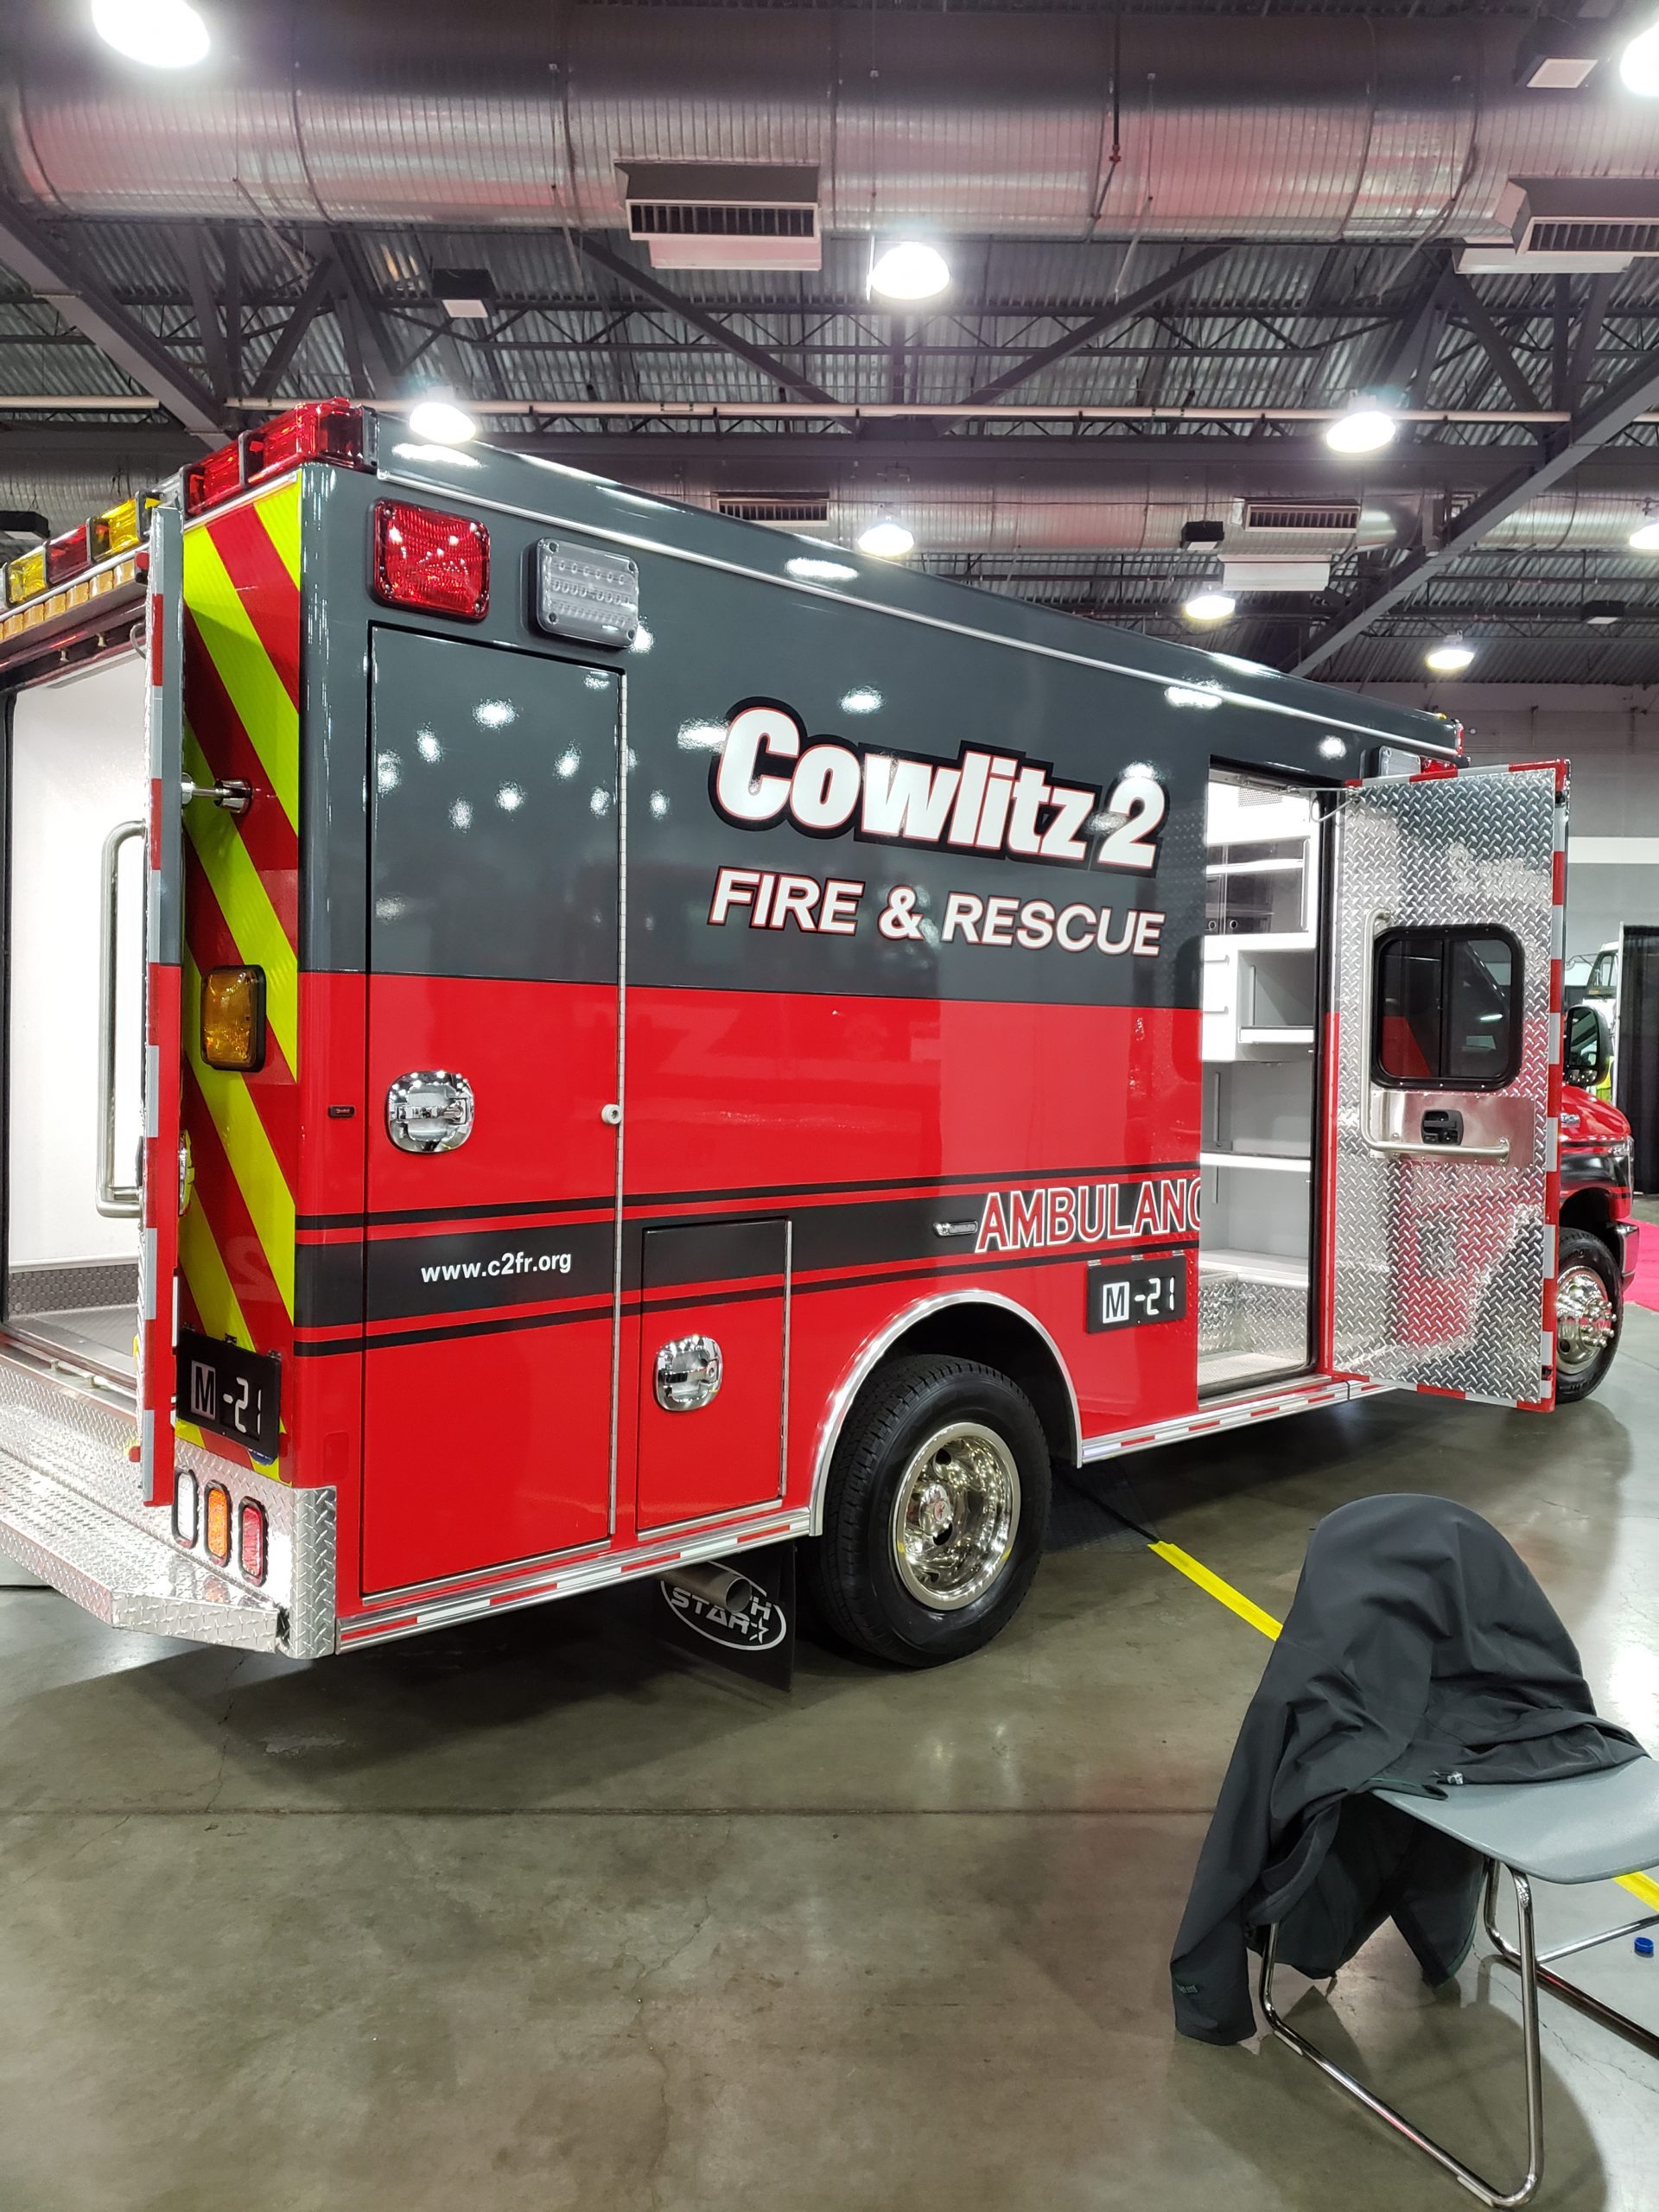 Cowlitz 2 Fire & Rescue Ambulance